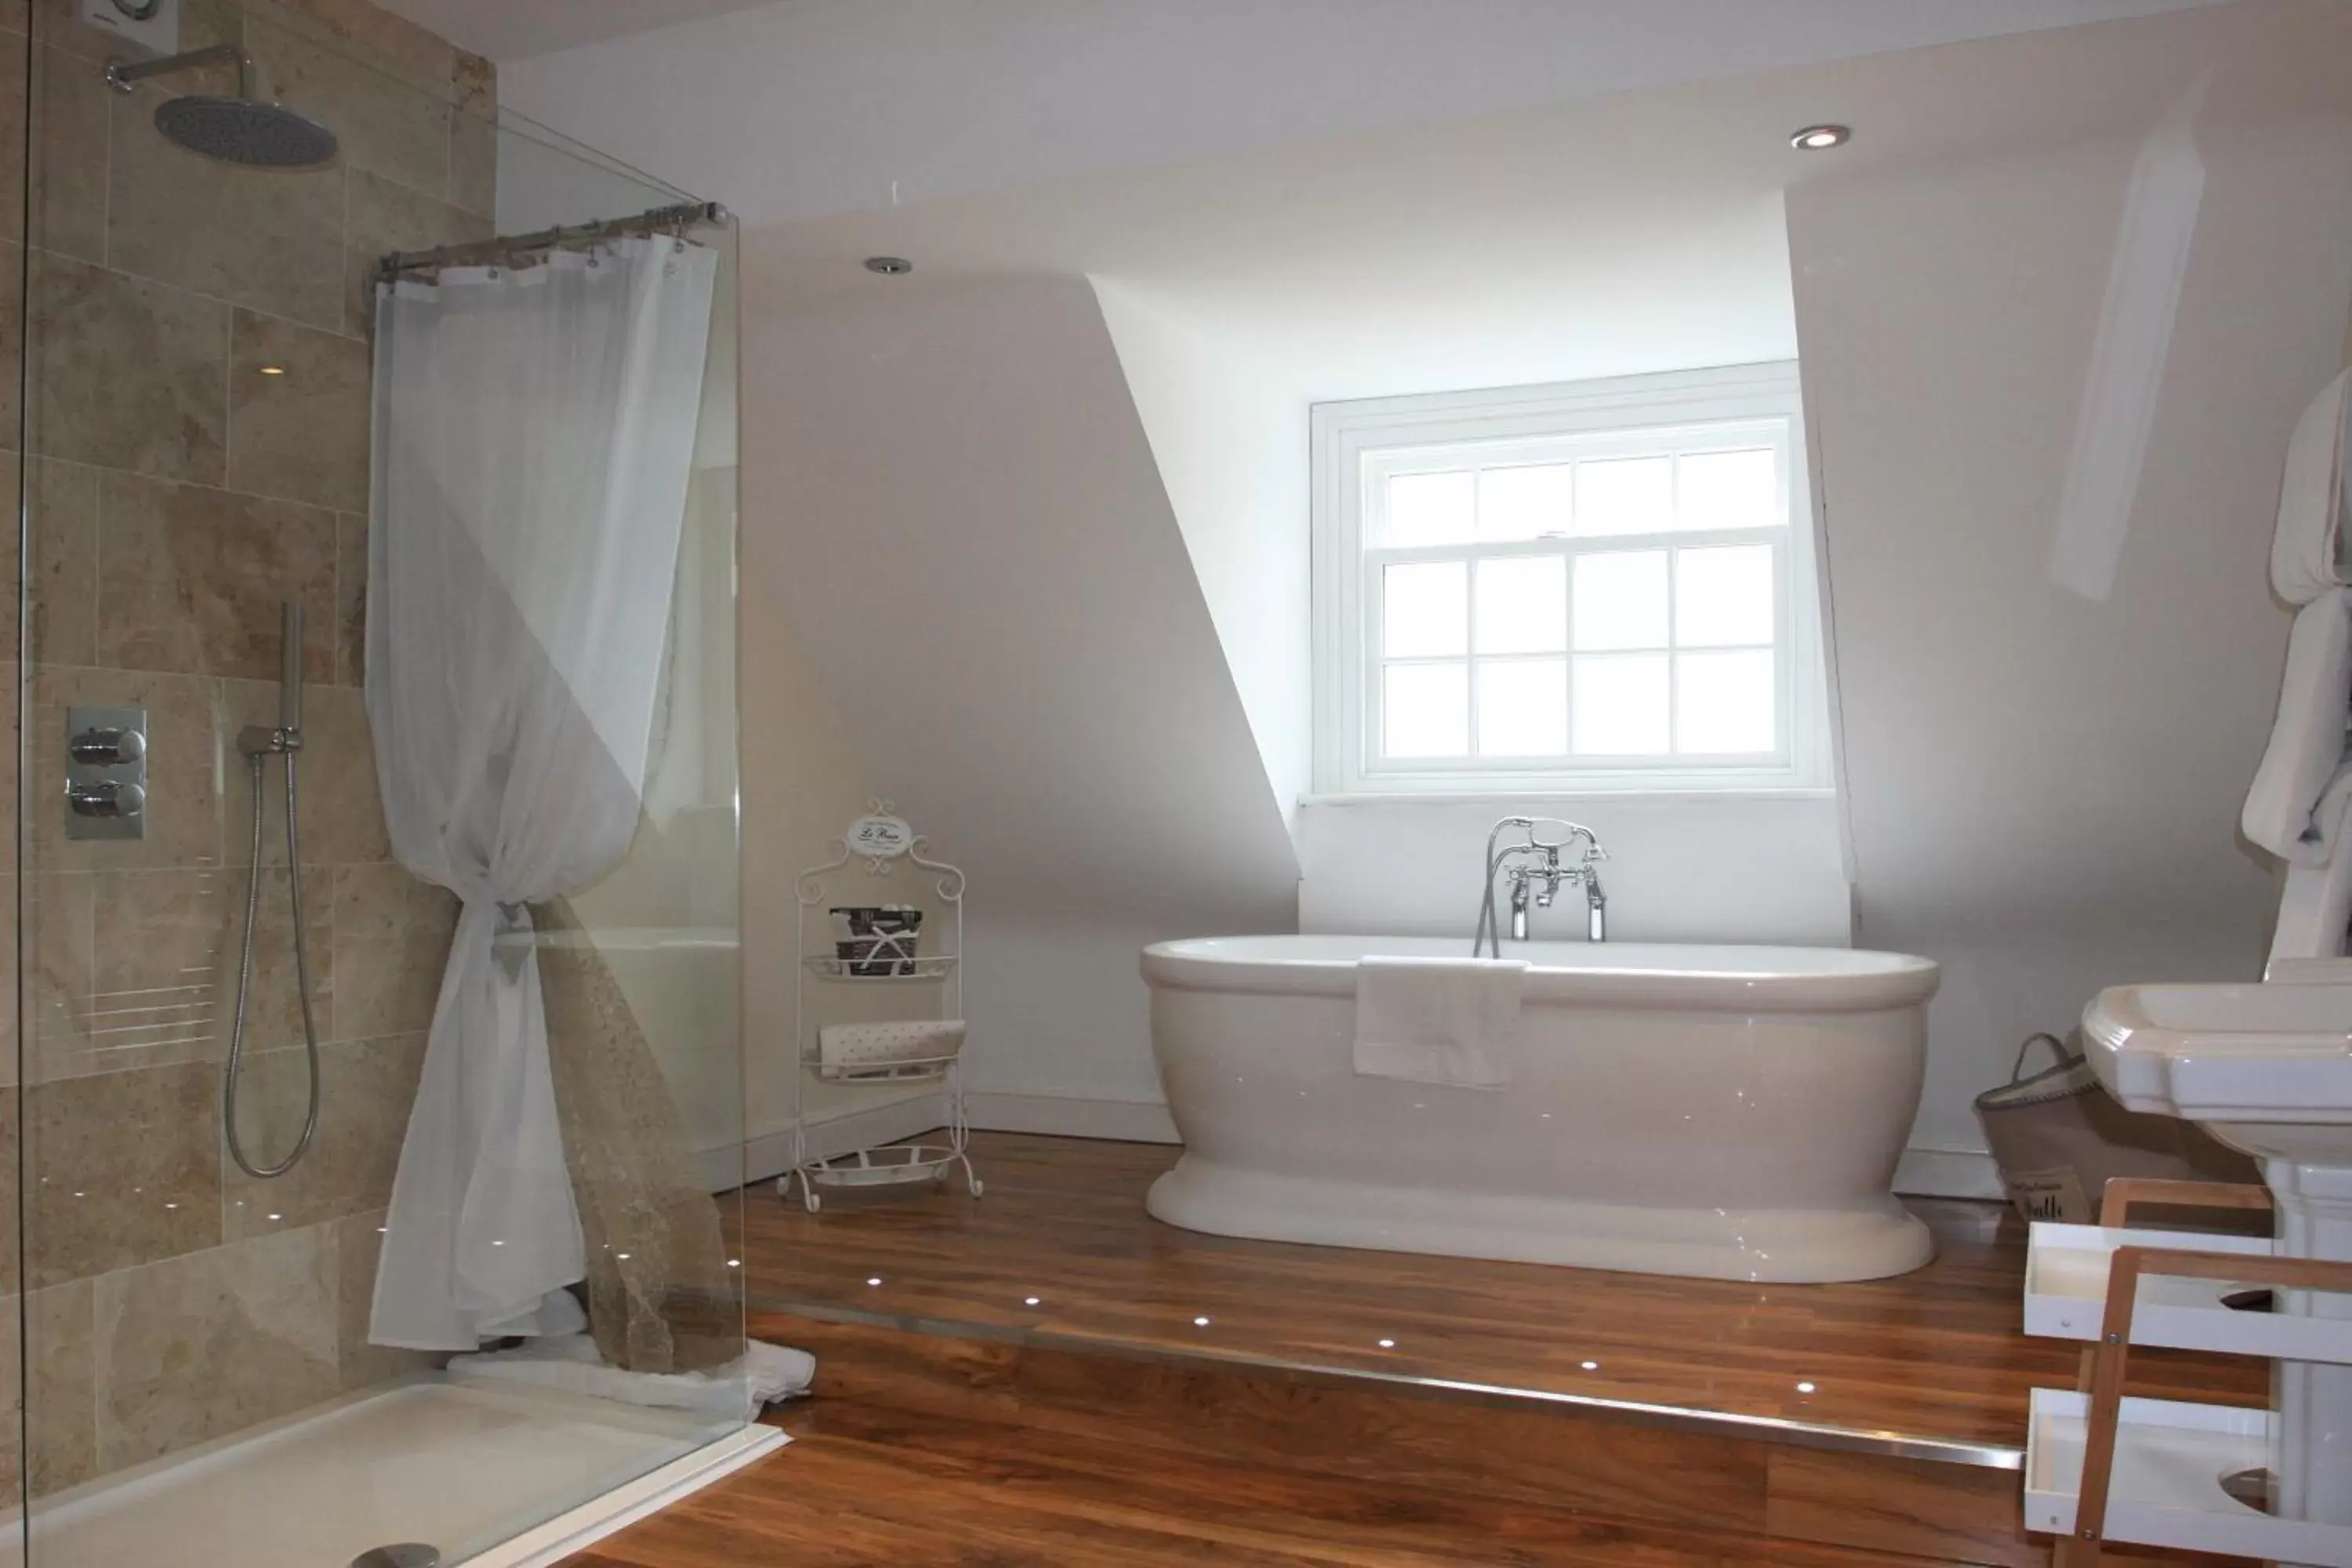 Bedroom, Bathroom in Wrangham House